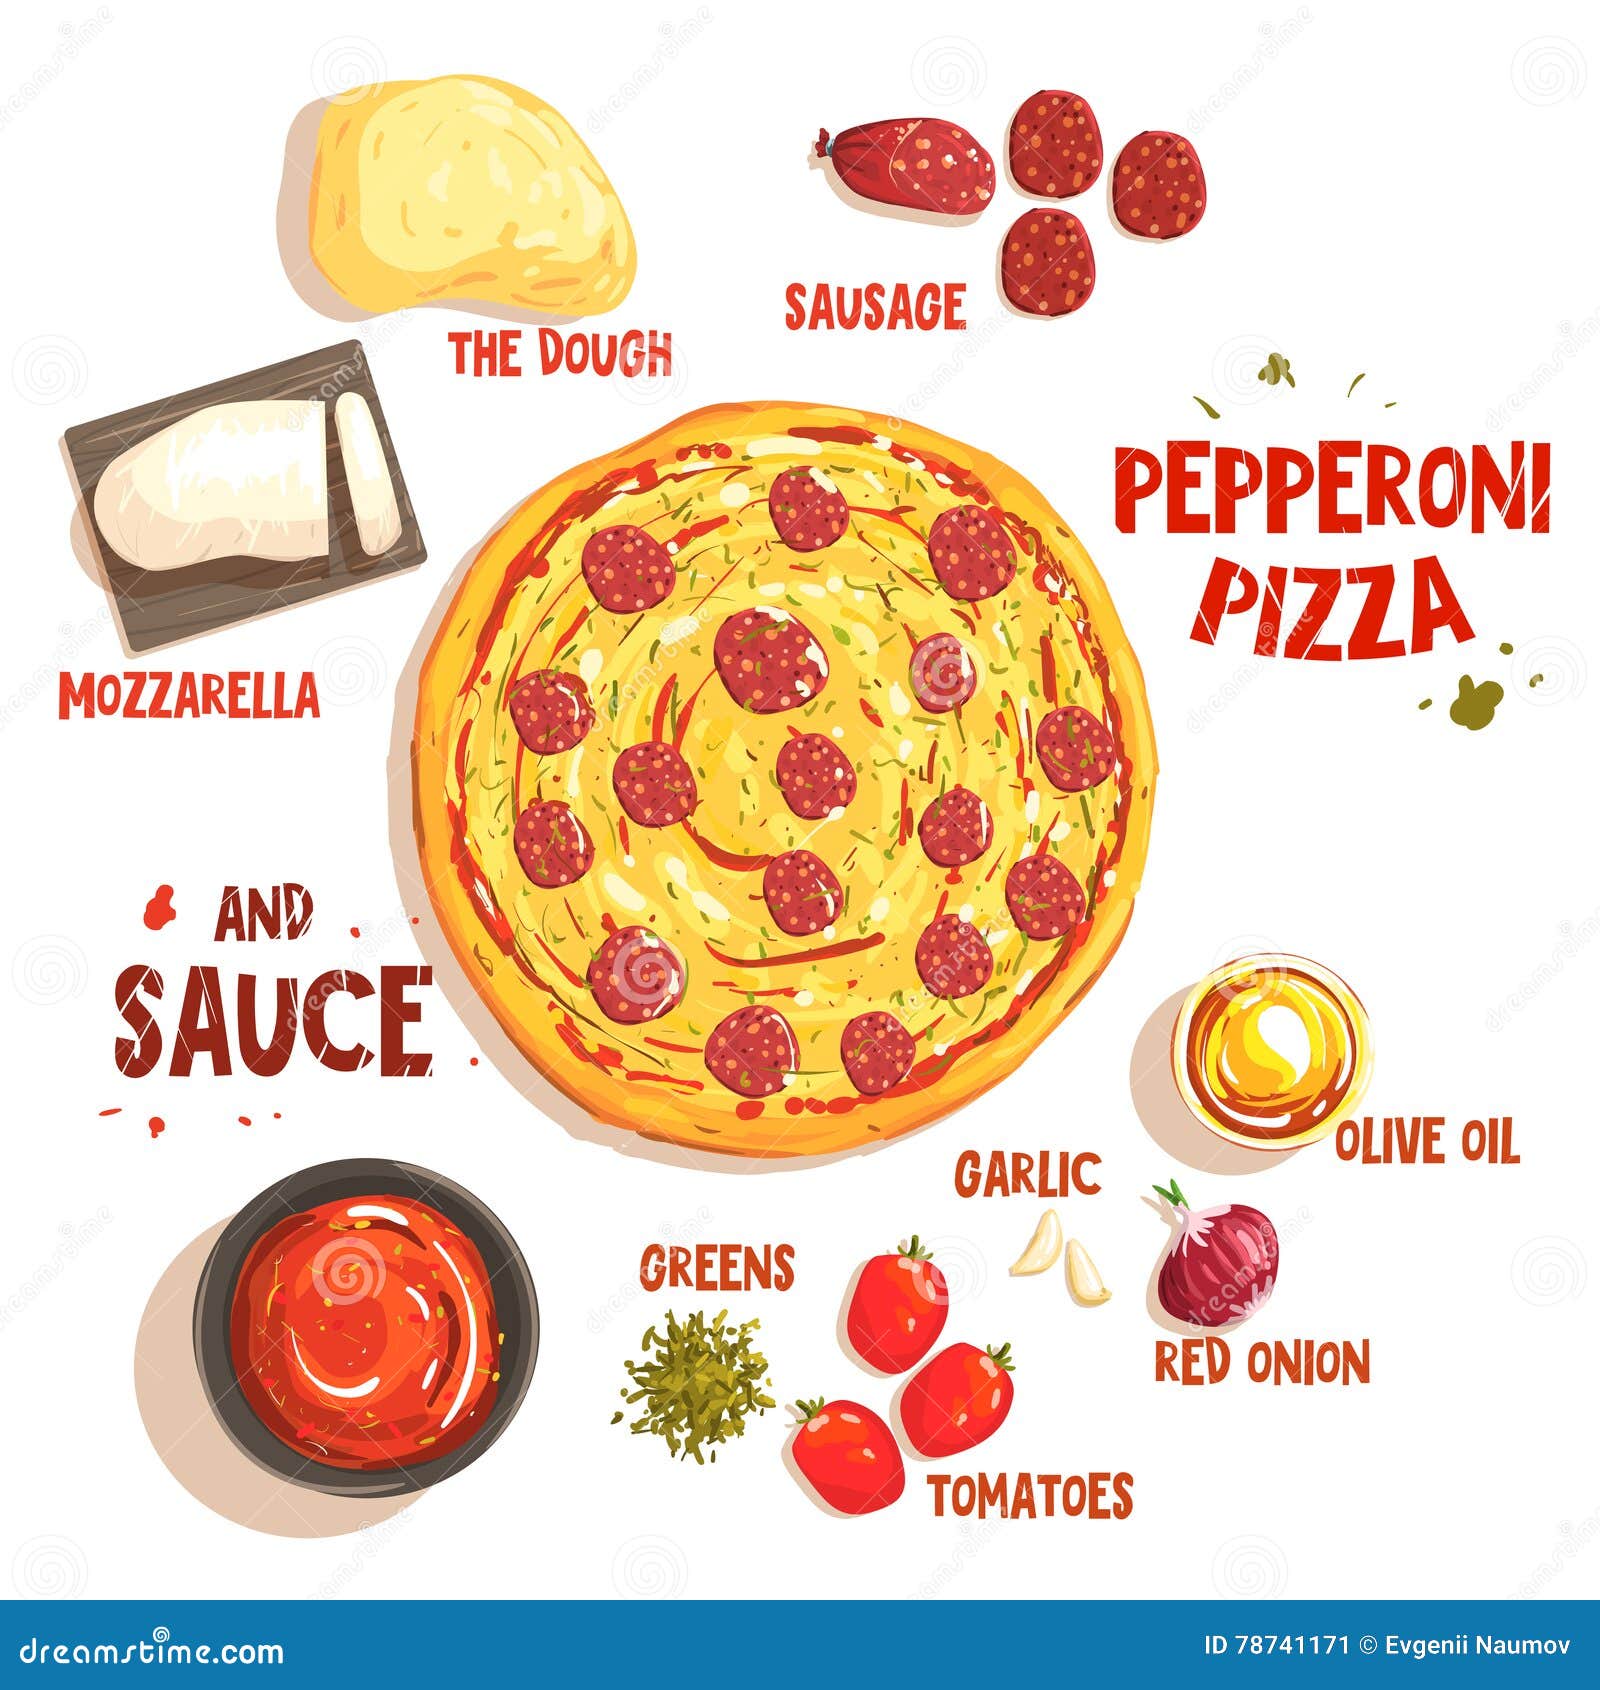 технологическая карта приготовления пиццы пепперони фото 81